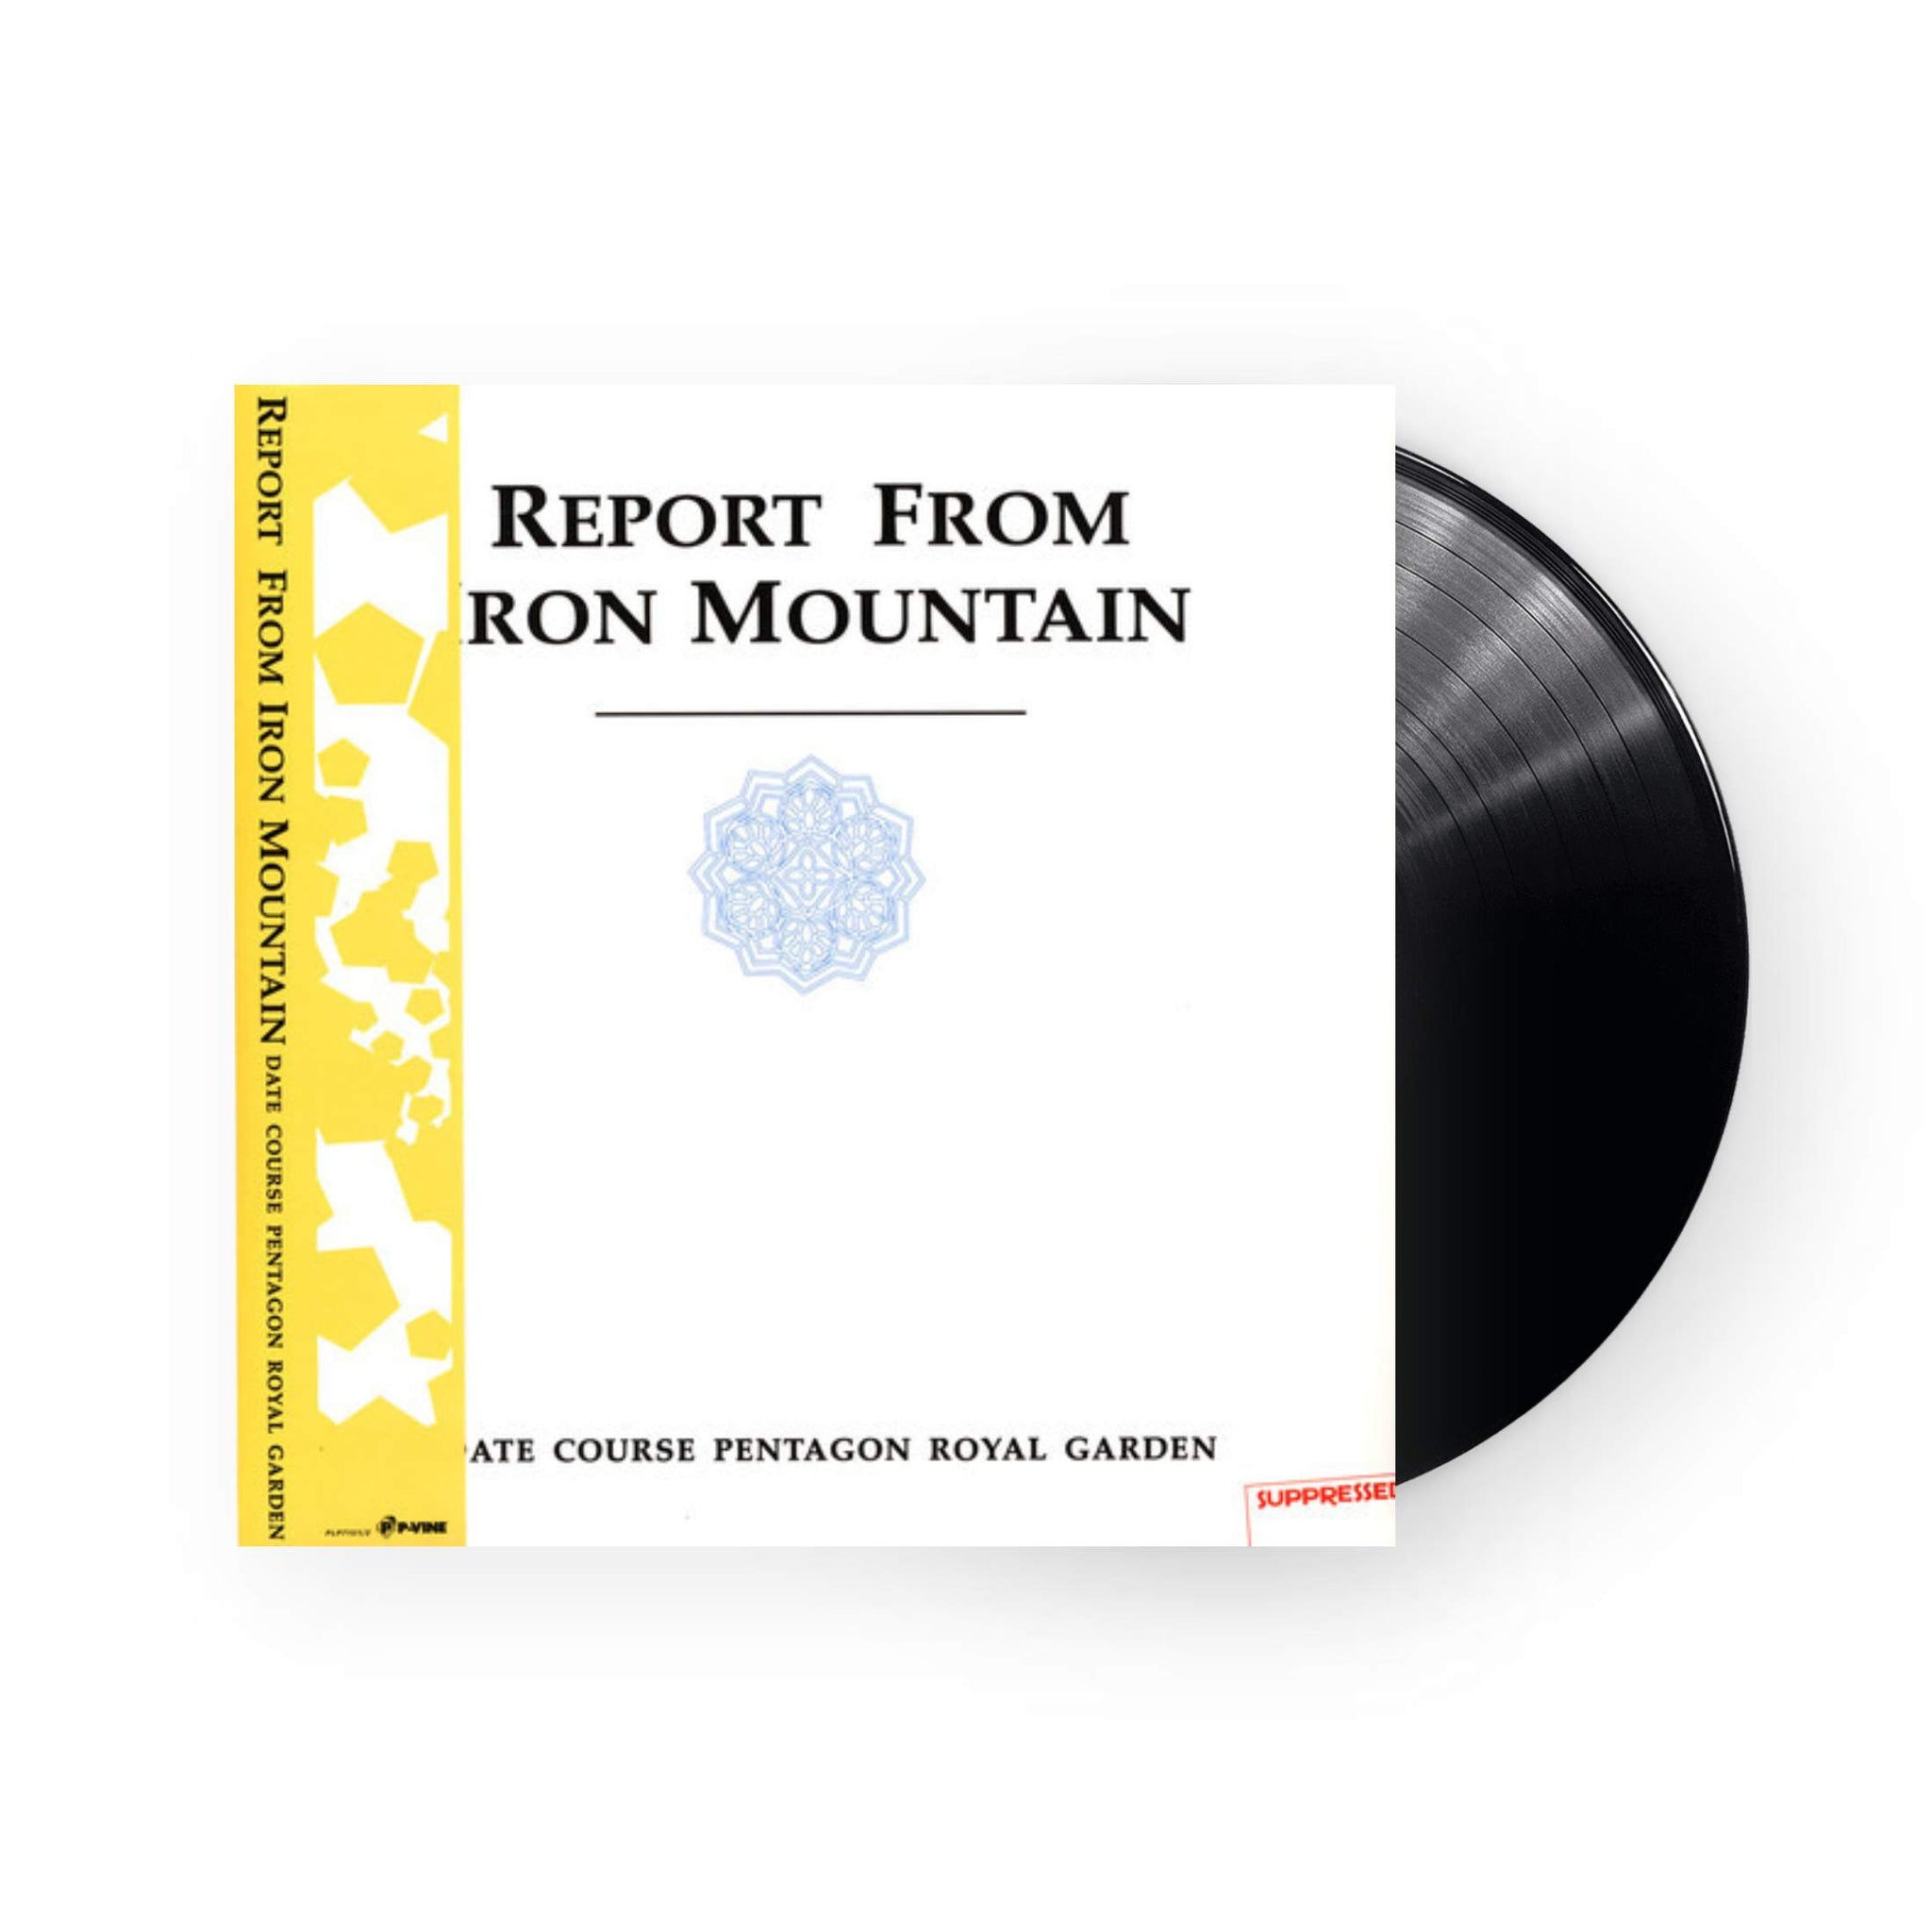 Dcprg (Date Course Pentagon Royal Garden) - Report From Ironmountain  LP (Black Vinyl)